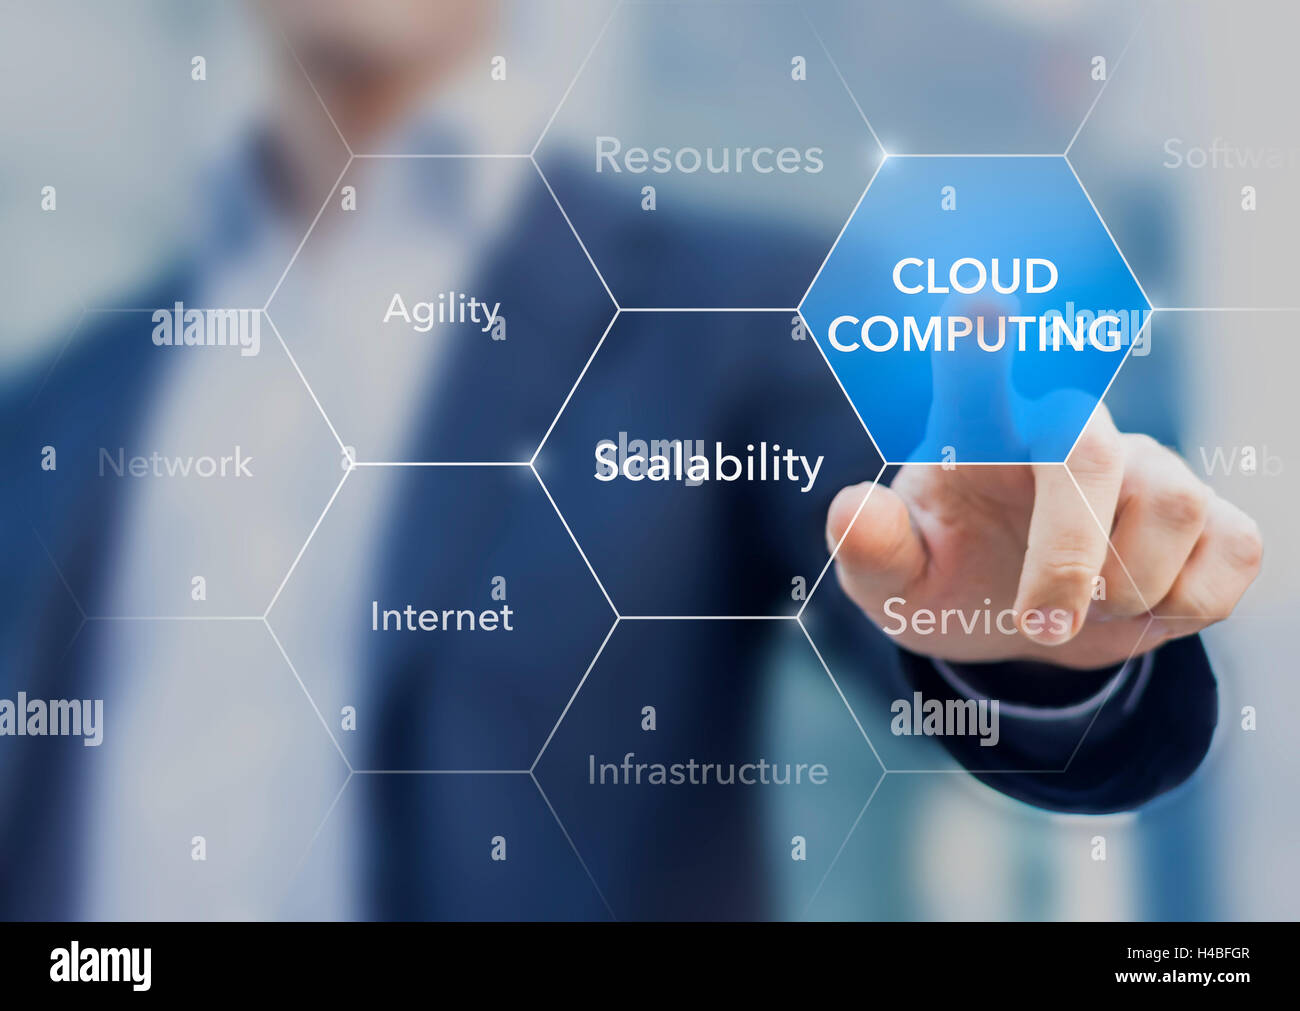 Consultor promover recursos de cloud computing y servicios Foto de stock